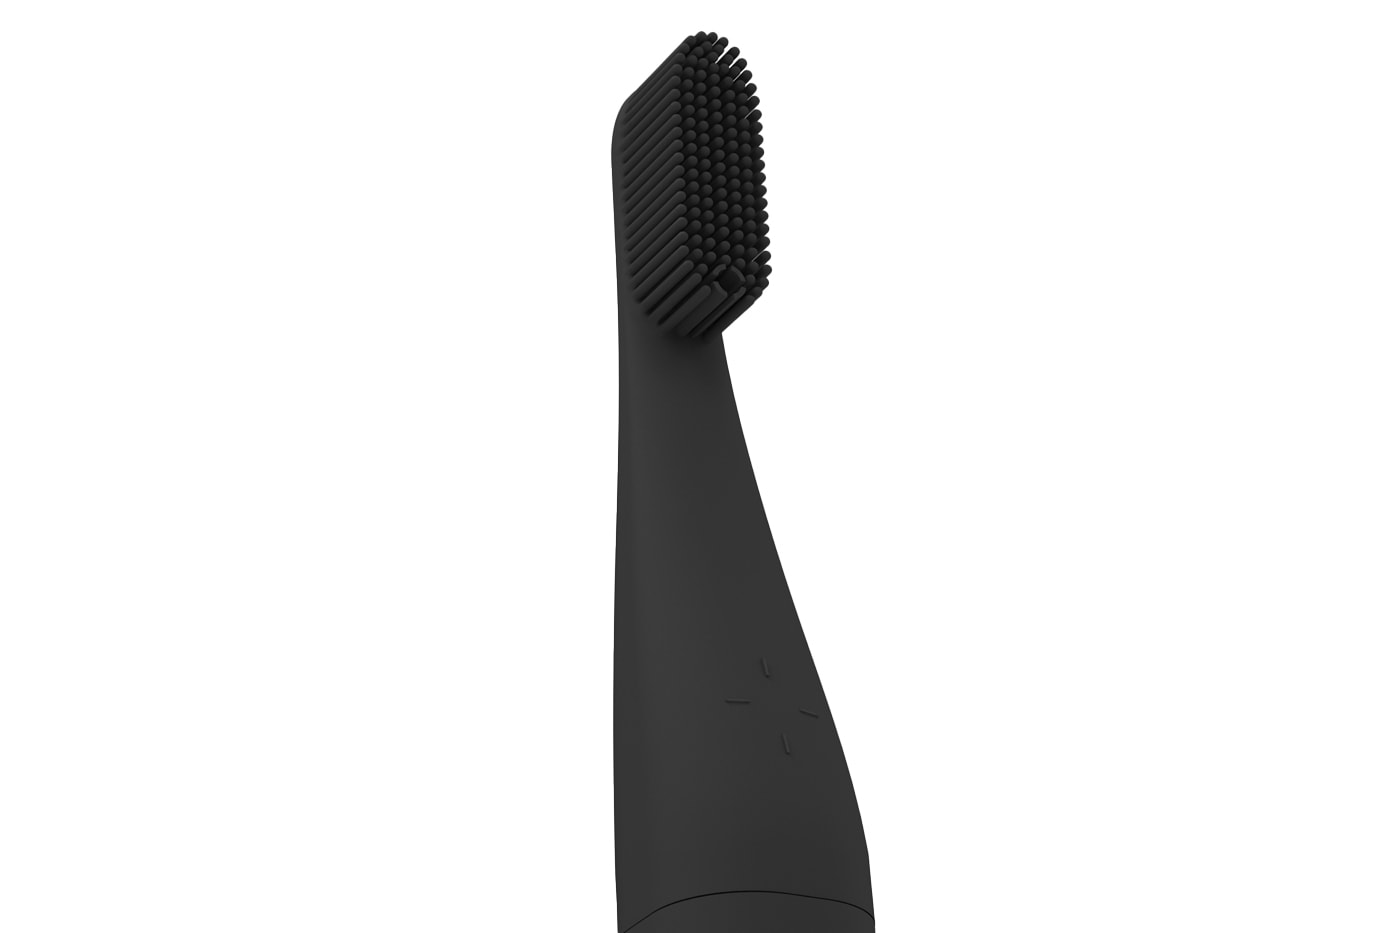 Nest Brush Self-Dispensing UV-C Toothbrush Kickstarter backing hygiene toothpaste tech reddot design 